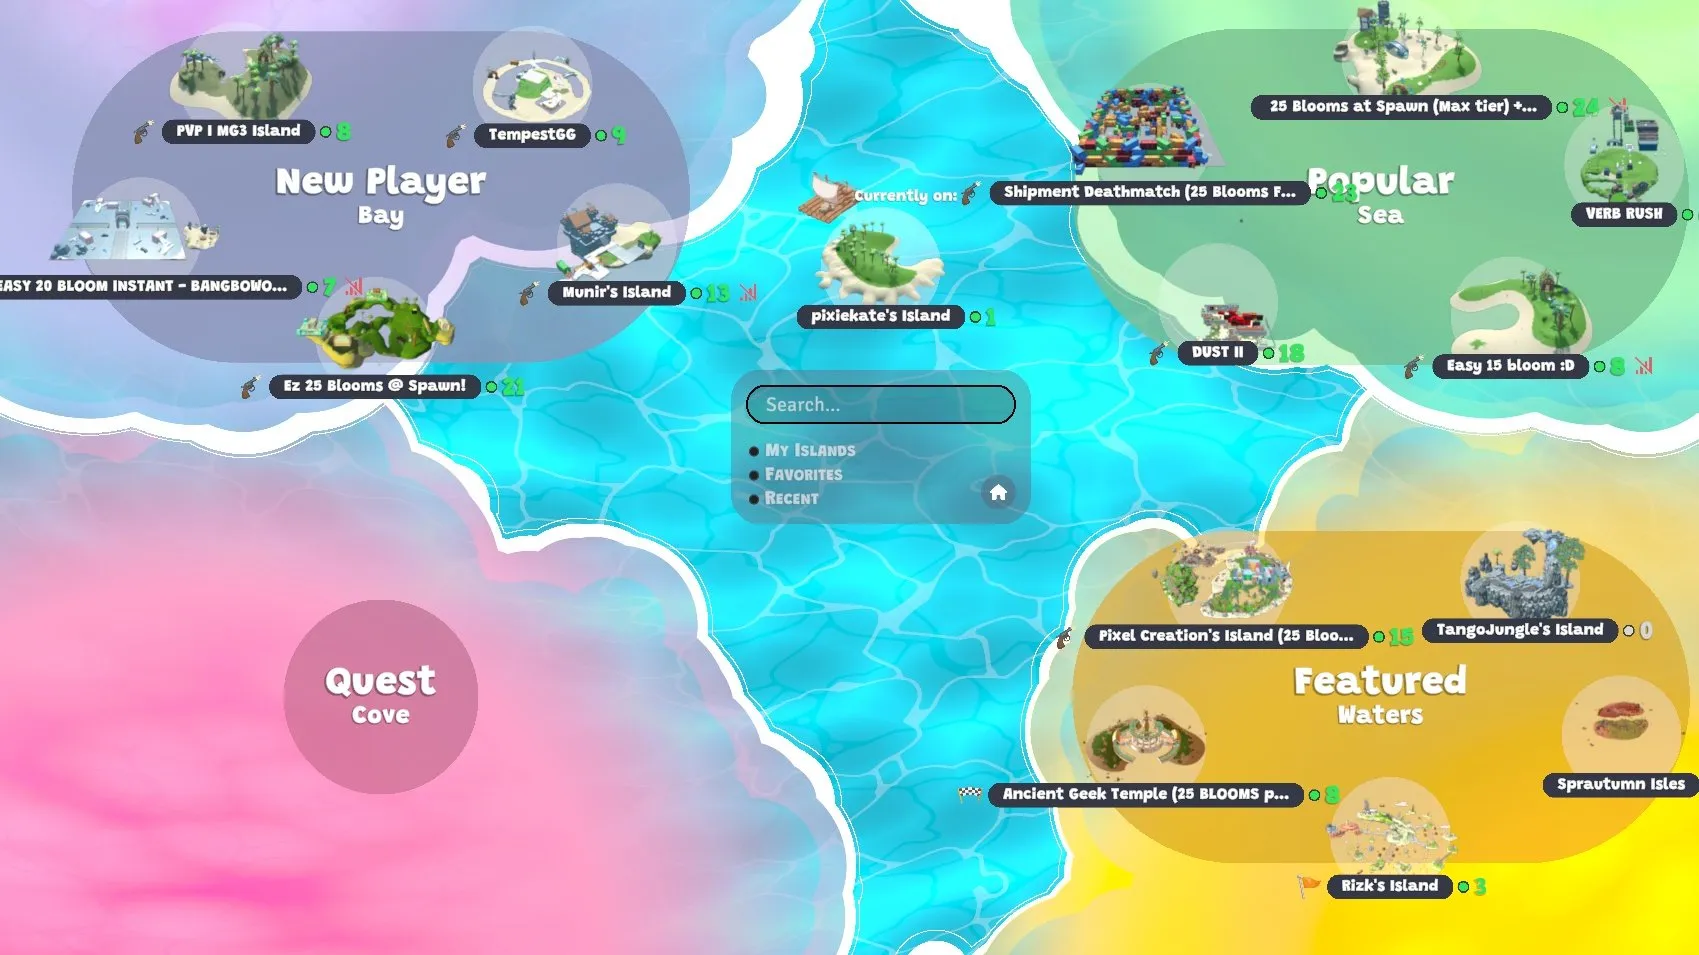 인기 있는 섬, '추천' 섬, 신규 플레이어를 위한 섬이 포함된 지도를 보여주는 게임 스크린샷.